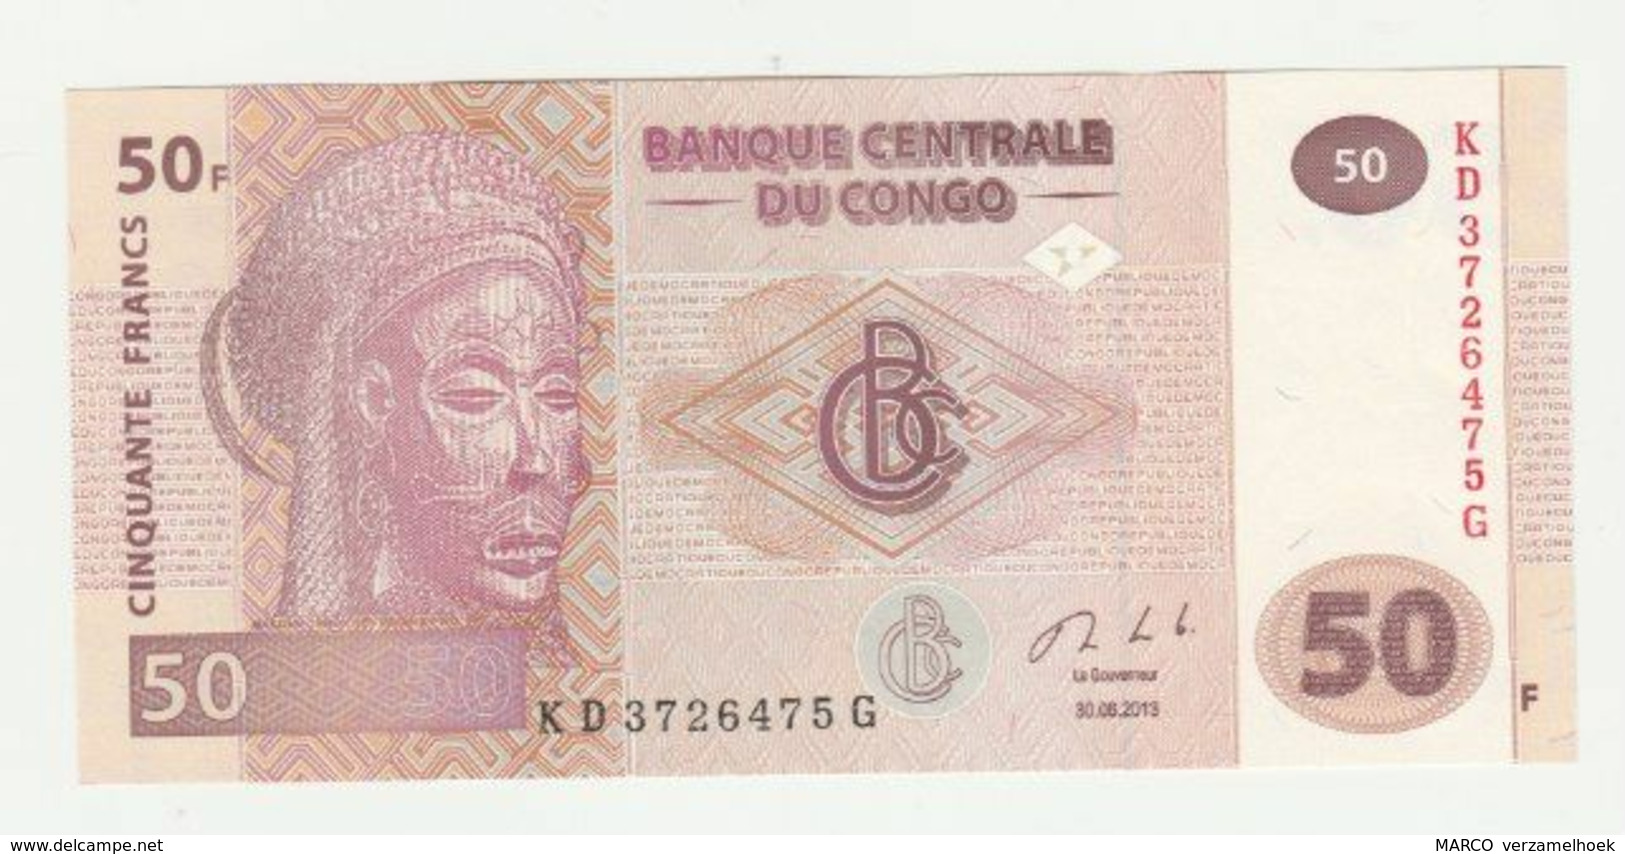 Banknote Banque Centrale Du Congo 50 Francs 2013 UNC - République Démocratique Du Congo & Zaïre